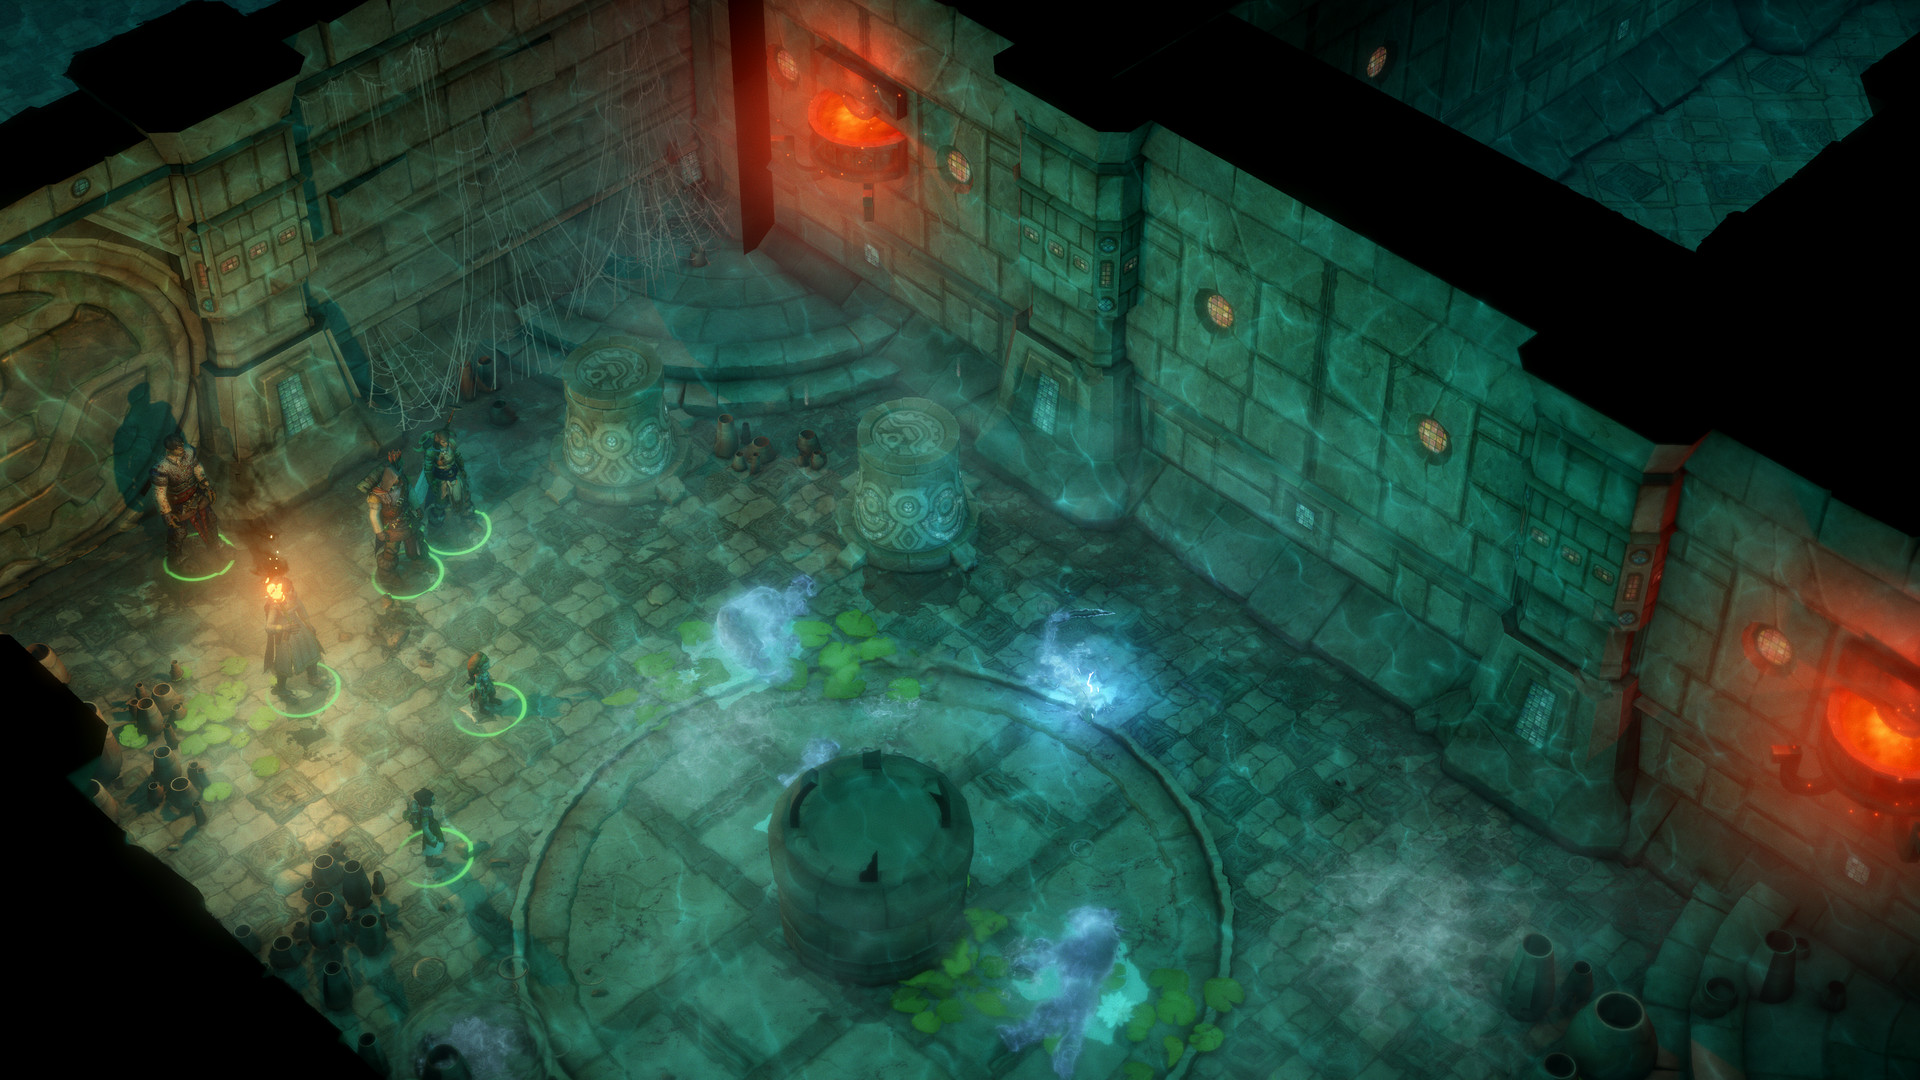 Pathfinder: Kingmaker - Beneath The Stolen Lands Featured Screenshot #1